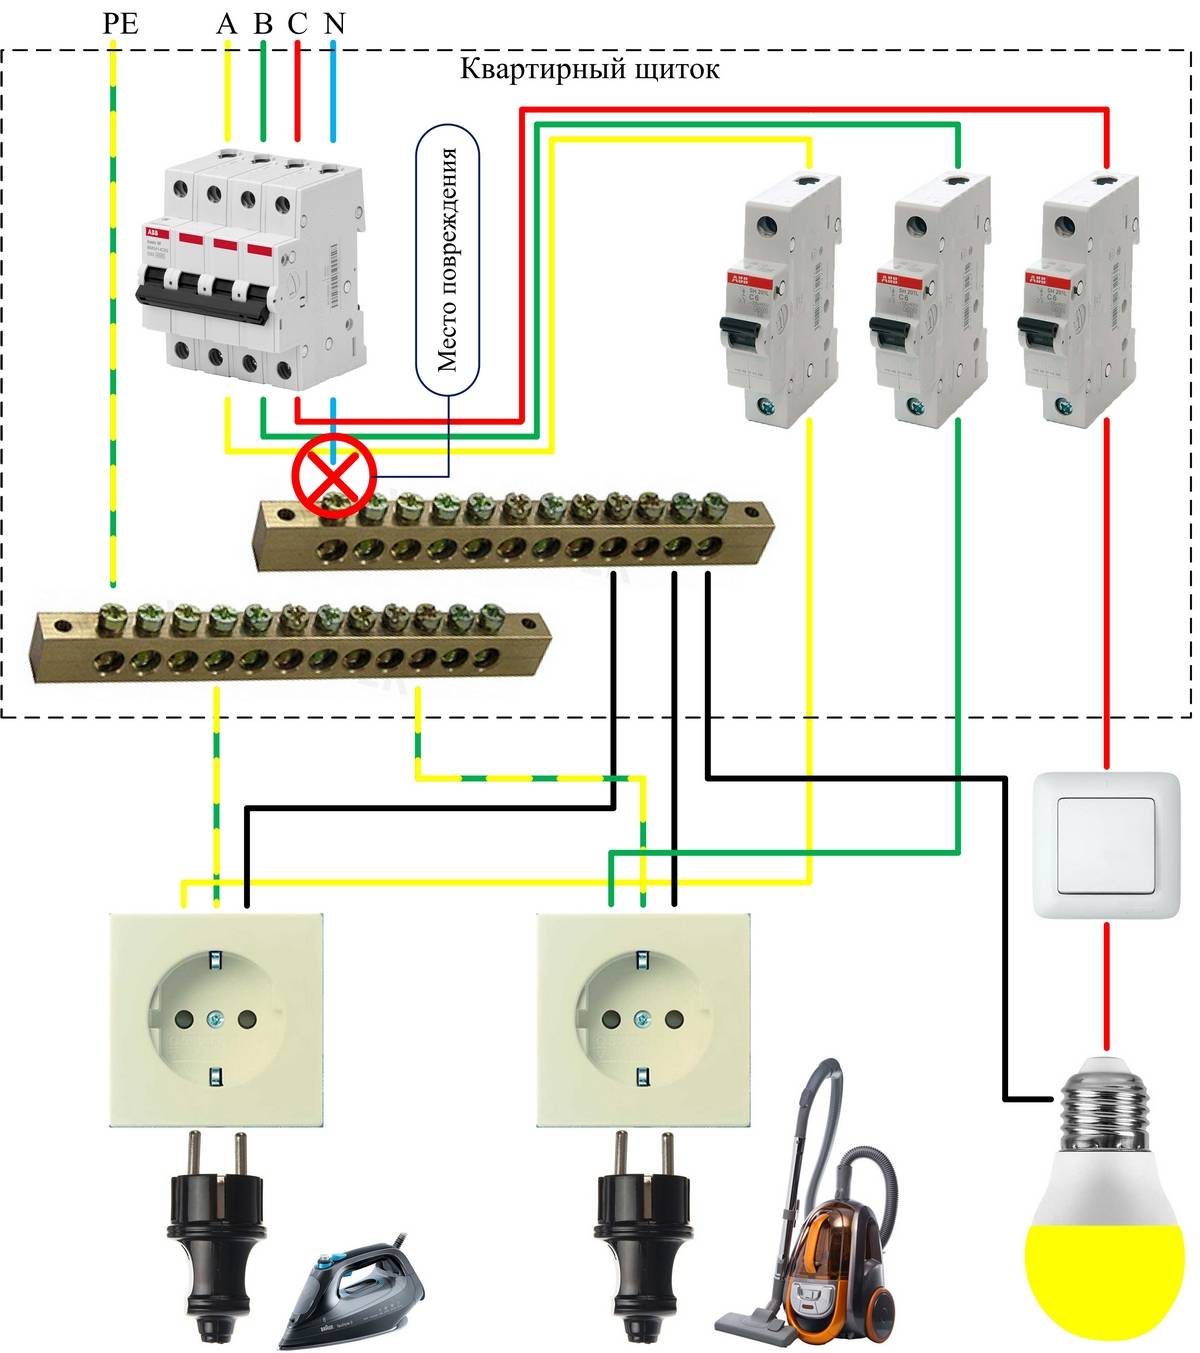 Как подключить розетку на 380 вольт » сайт для электриков - советы, примеры, схемы